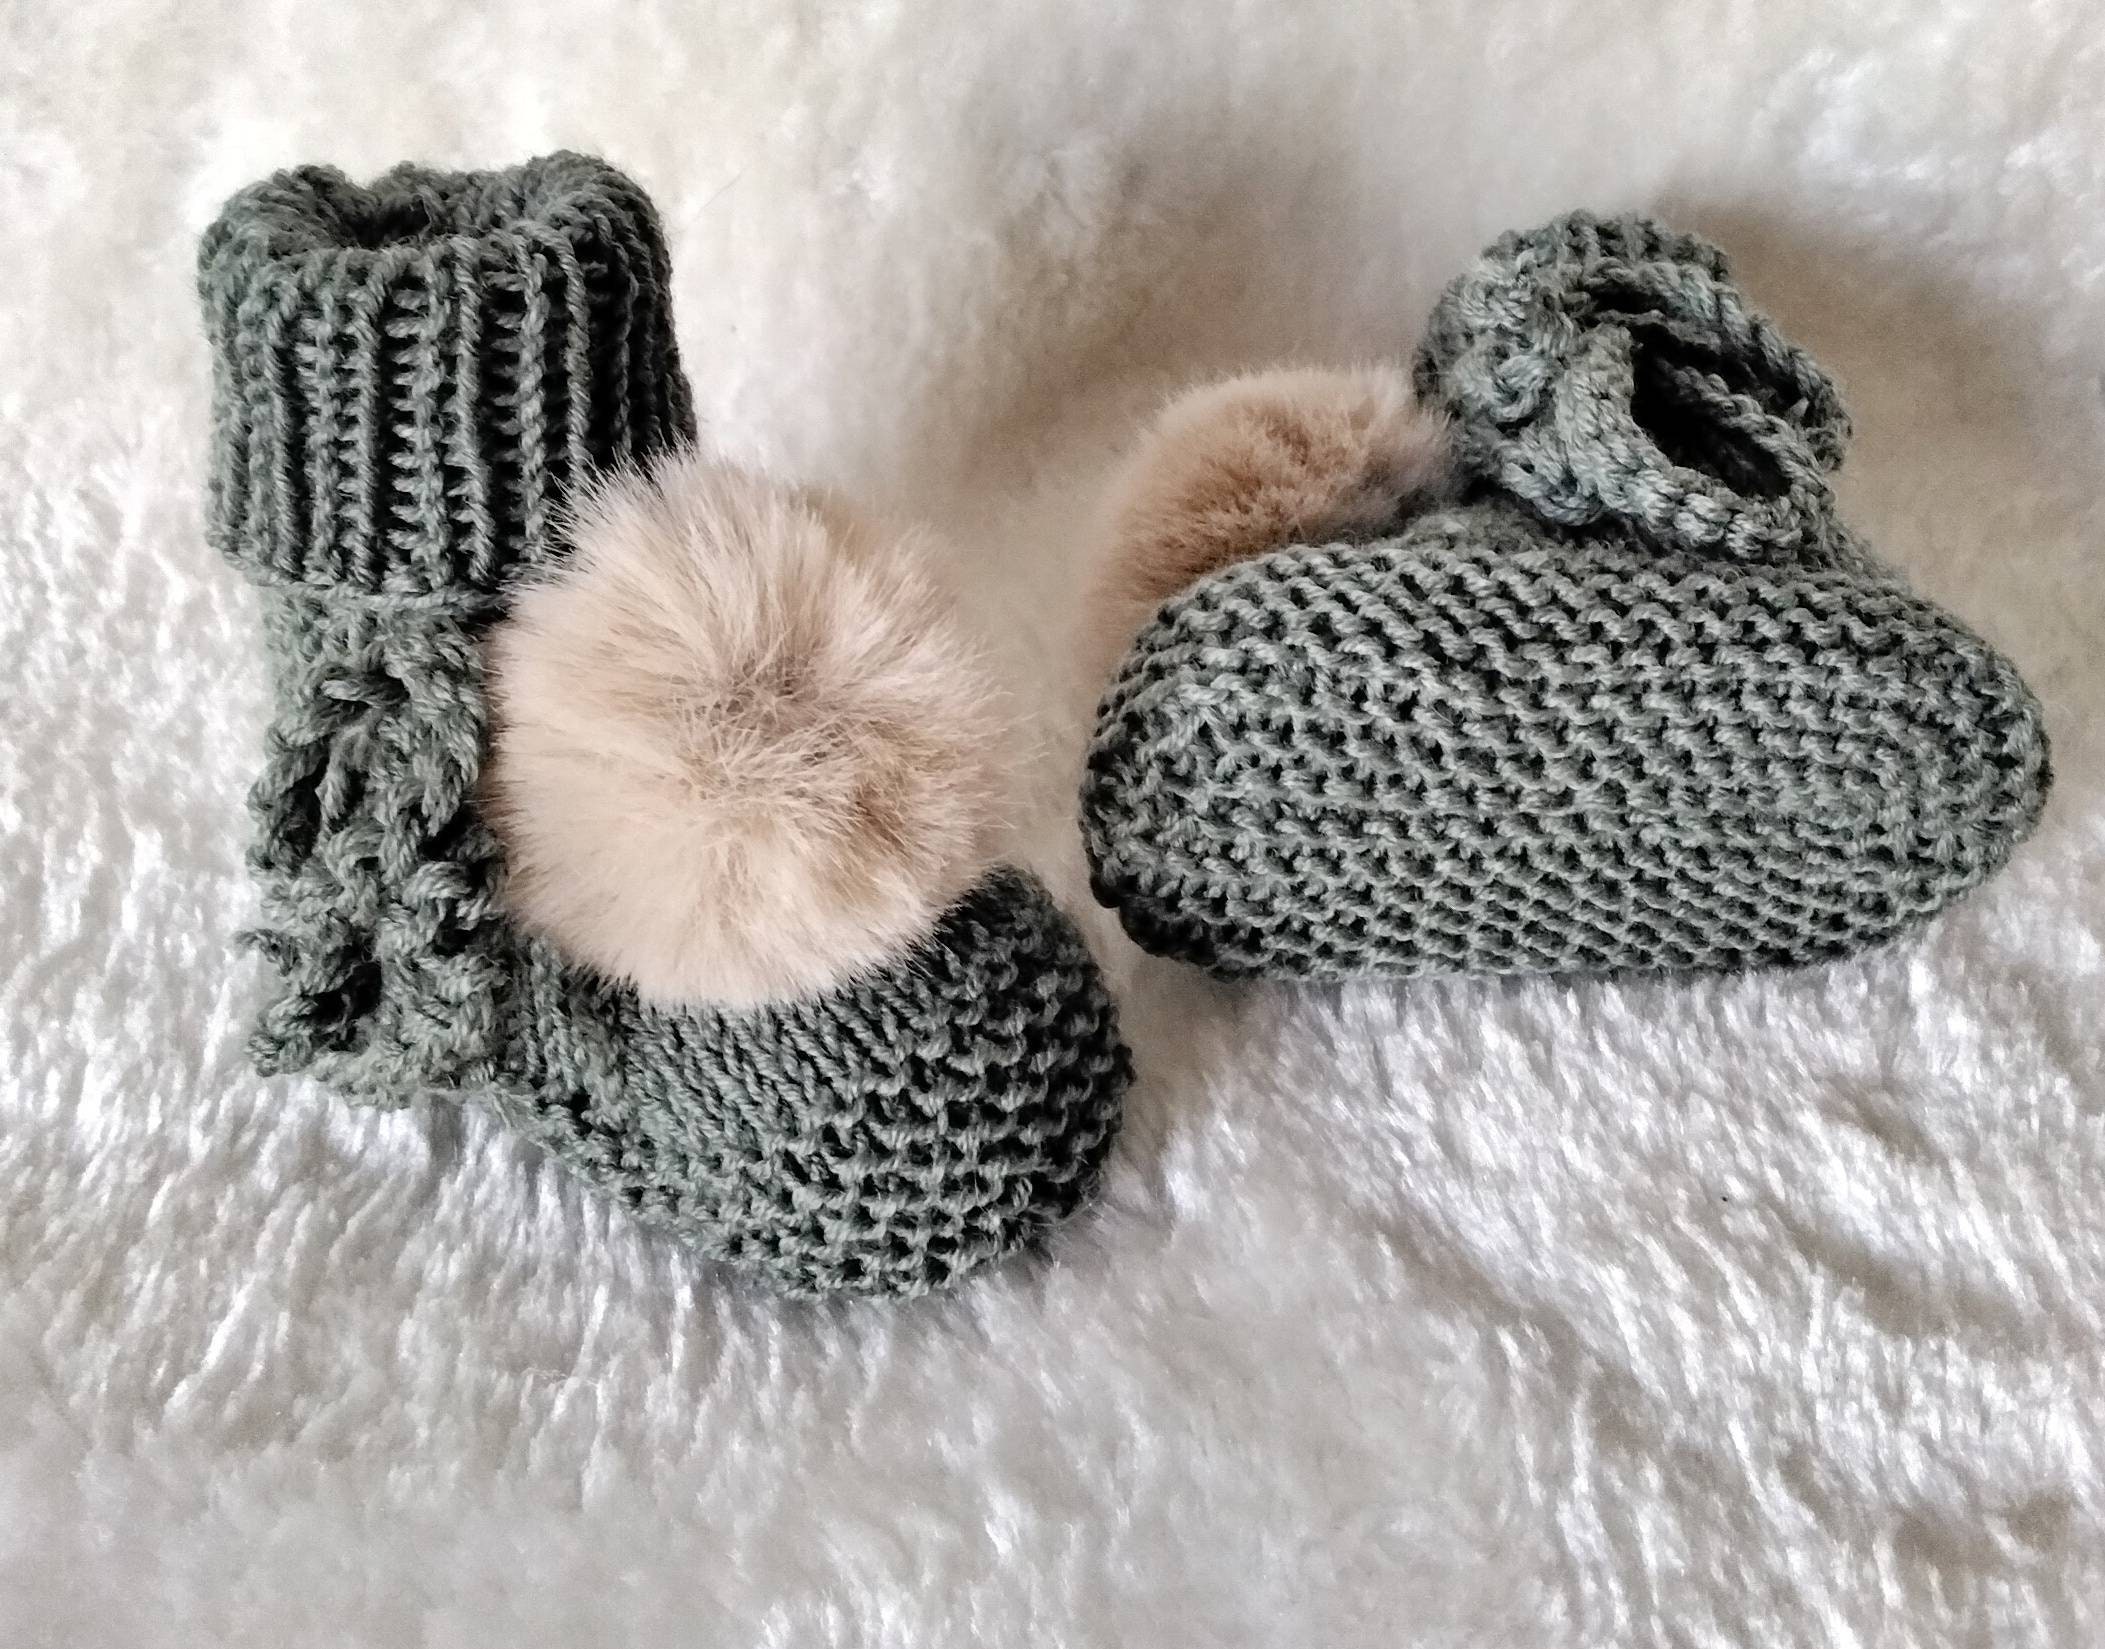 Pantofole per bambini a maglia mani 100% filo merino e i loro pompon in pelliccia sintetica taglia 3,6 mesi Scarpe Calzature bambina Stivali 